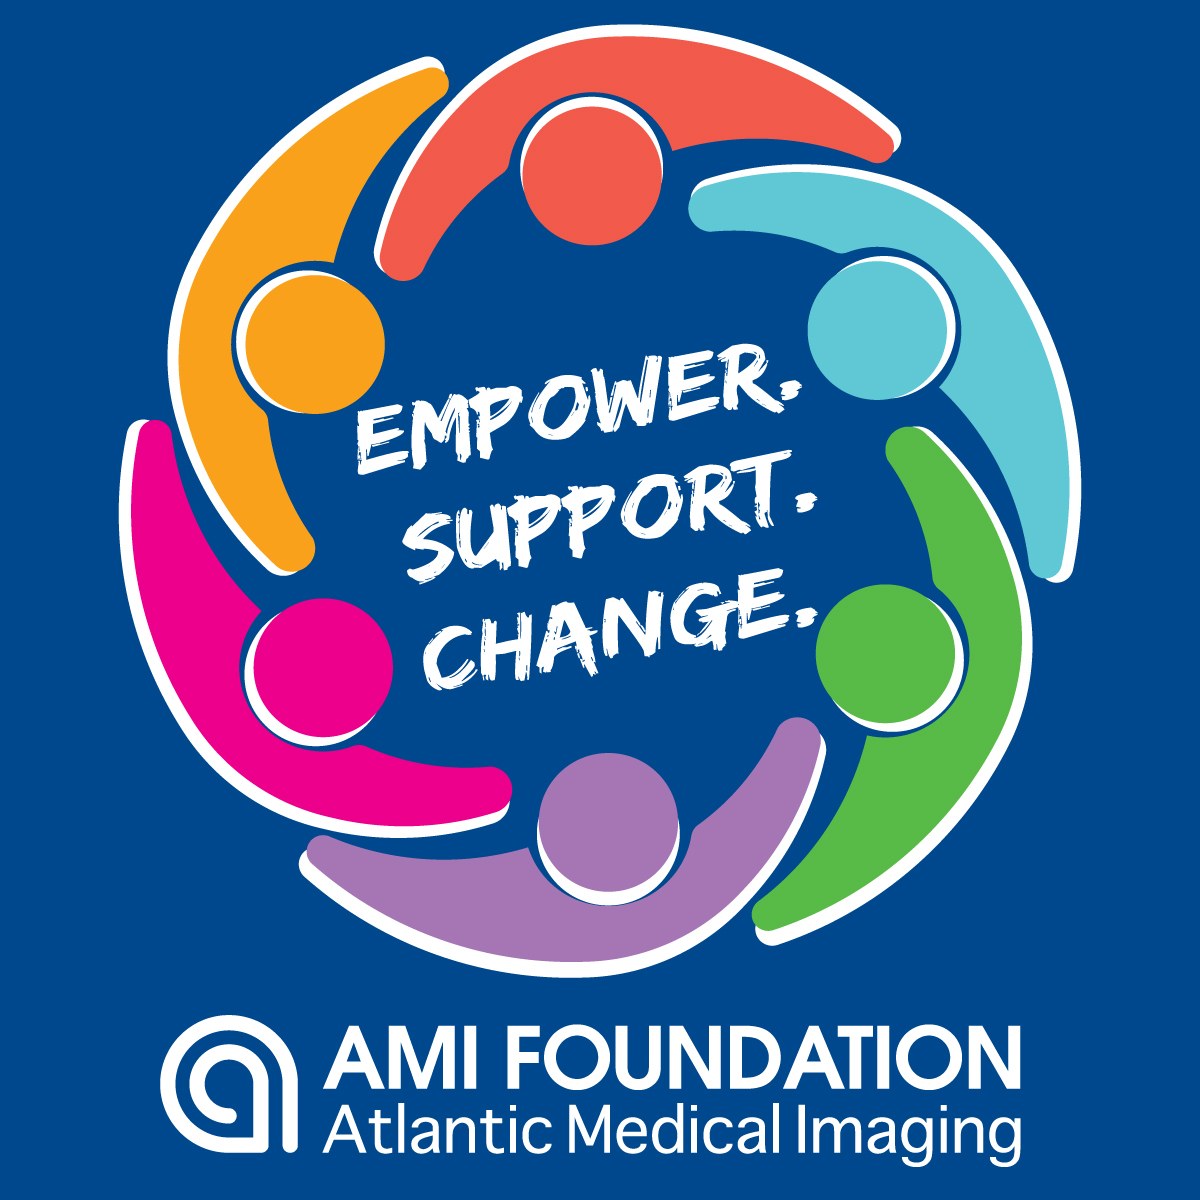 AMI Foundation